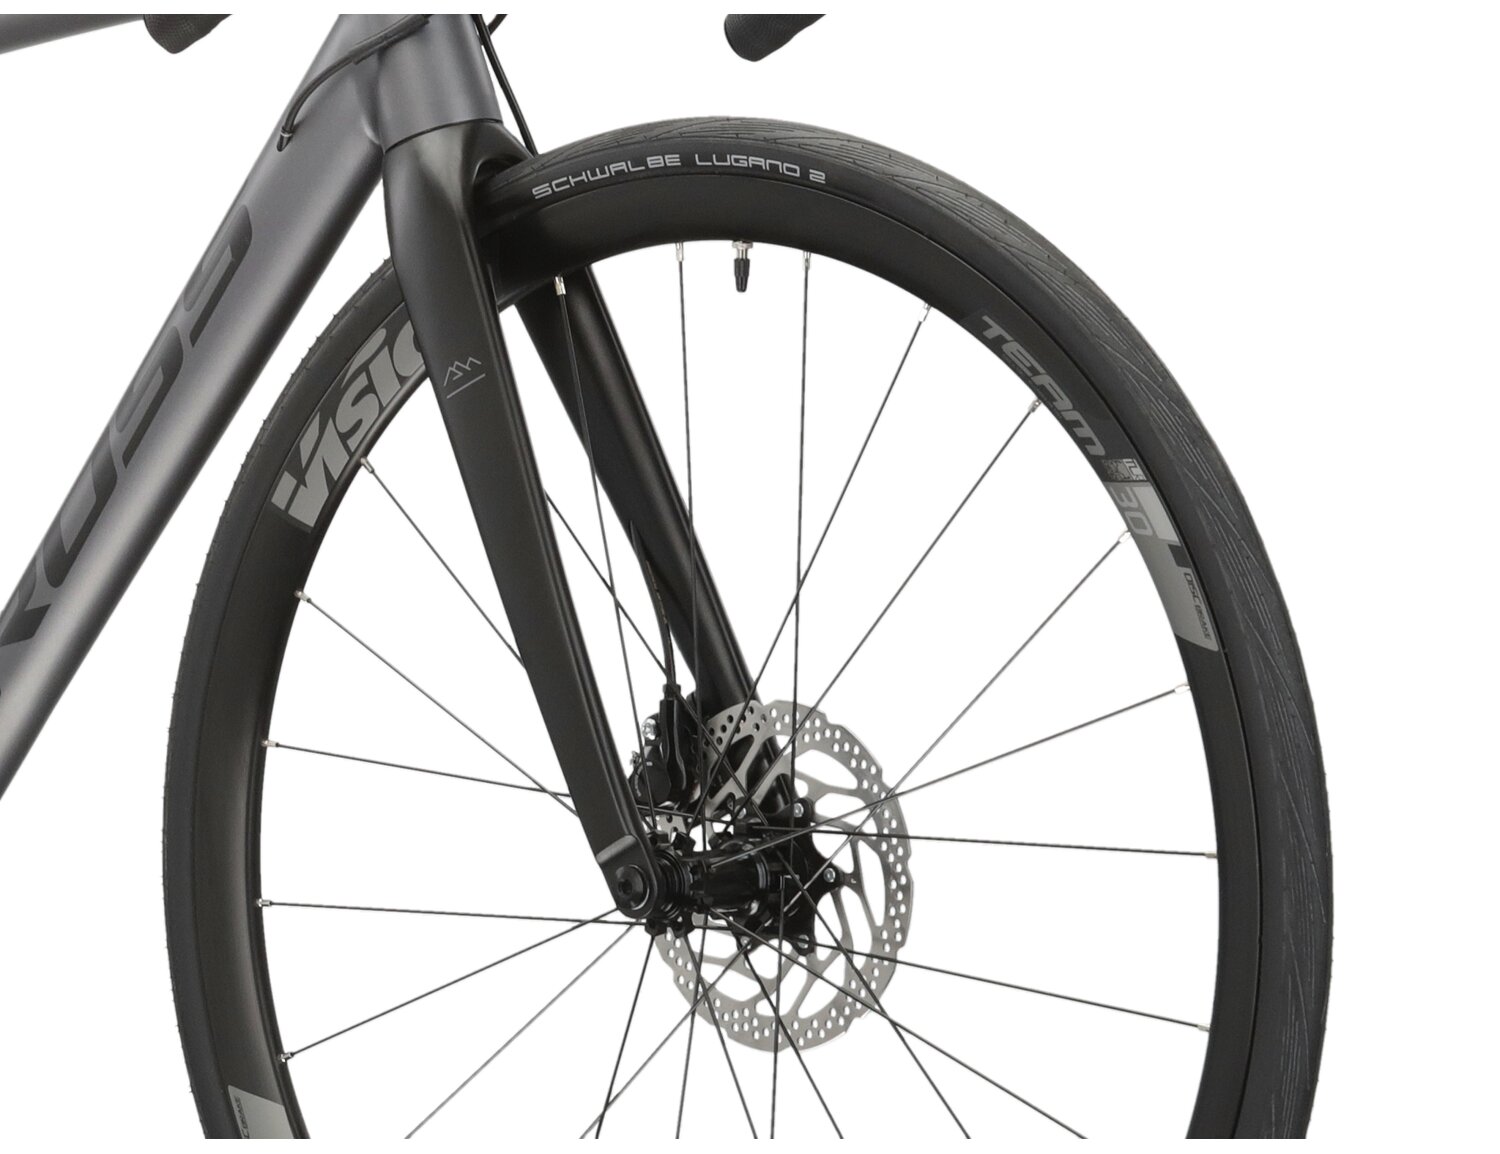  Aluminiowa rama, sztywny carbonowy widelec oraz opony Schwalbe w rowerze szosowym KROSS Vento DSC 5.0 